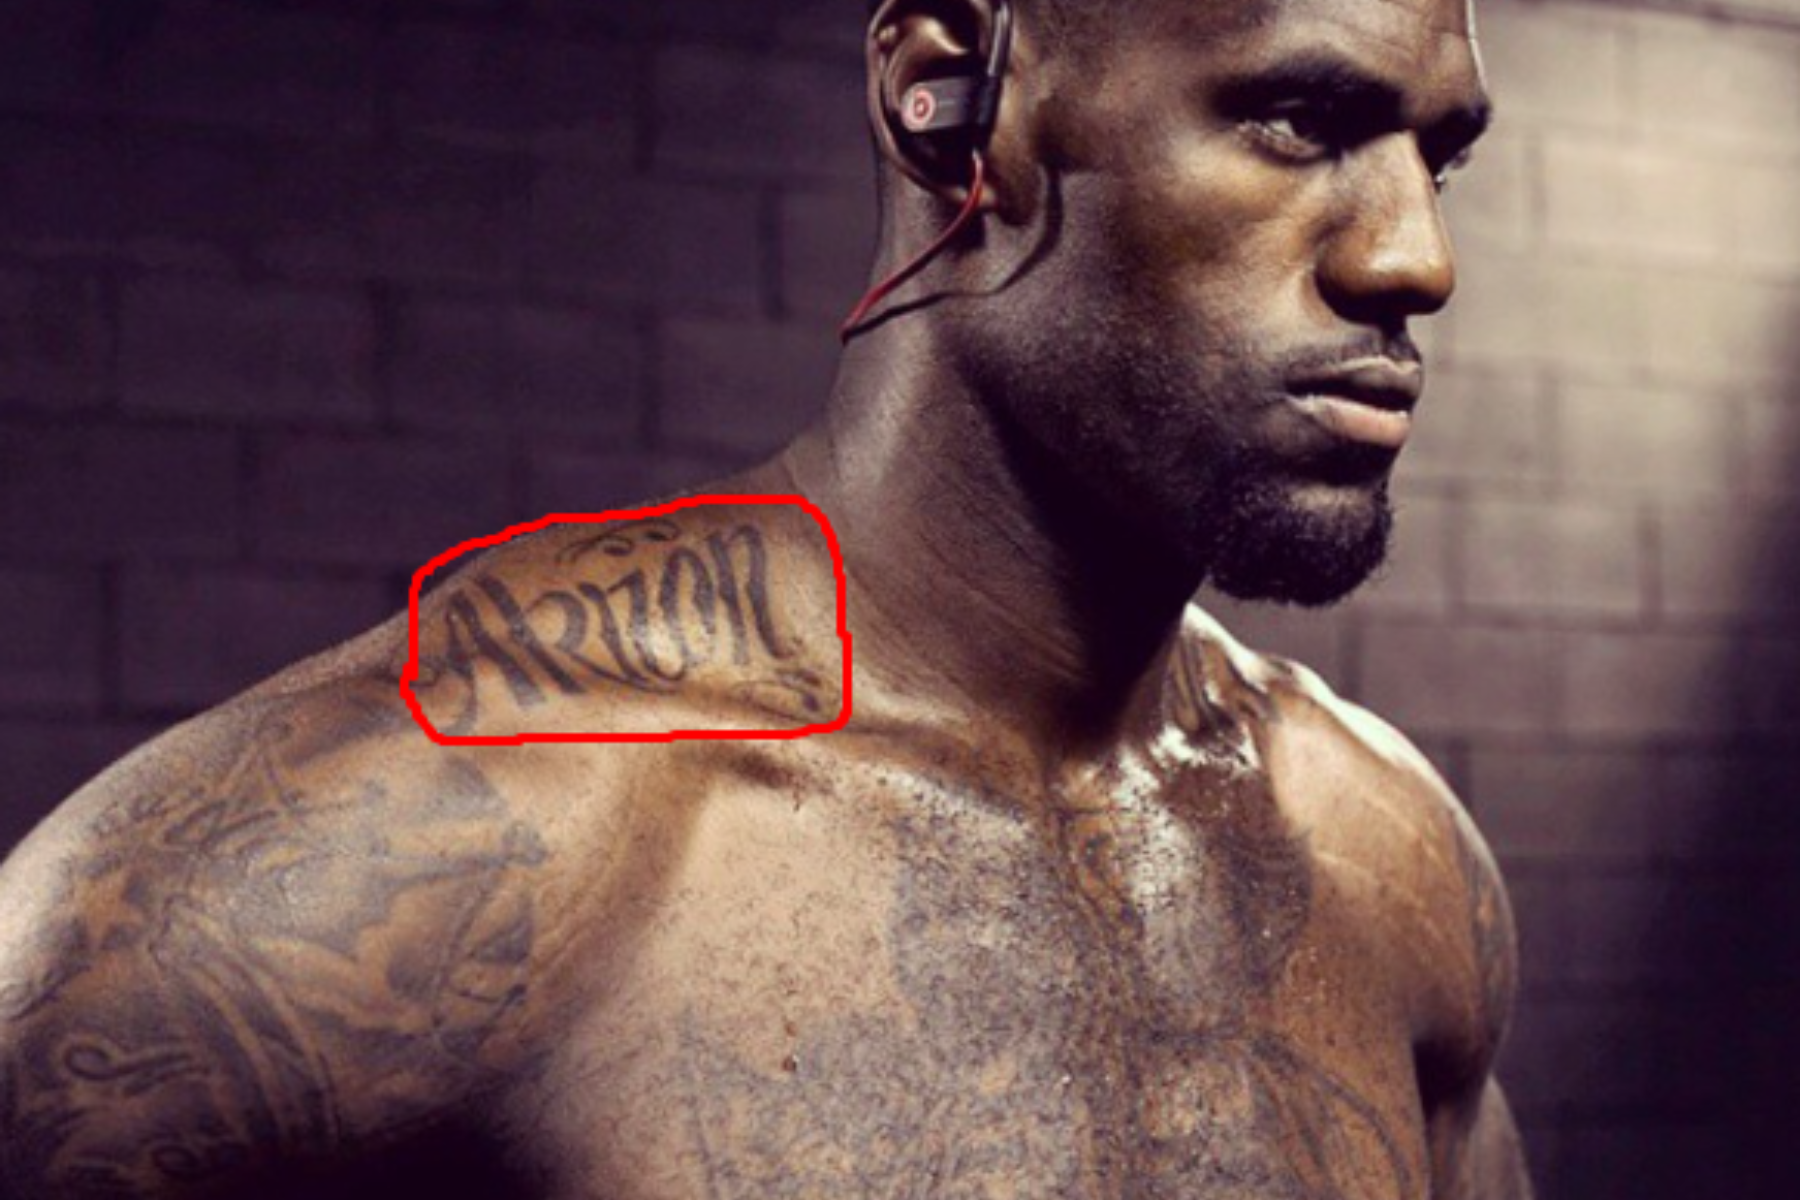 LeBron James has an Akron tattoo next to his neck